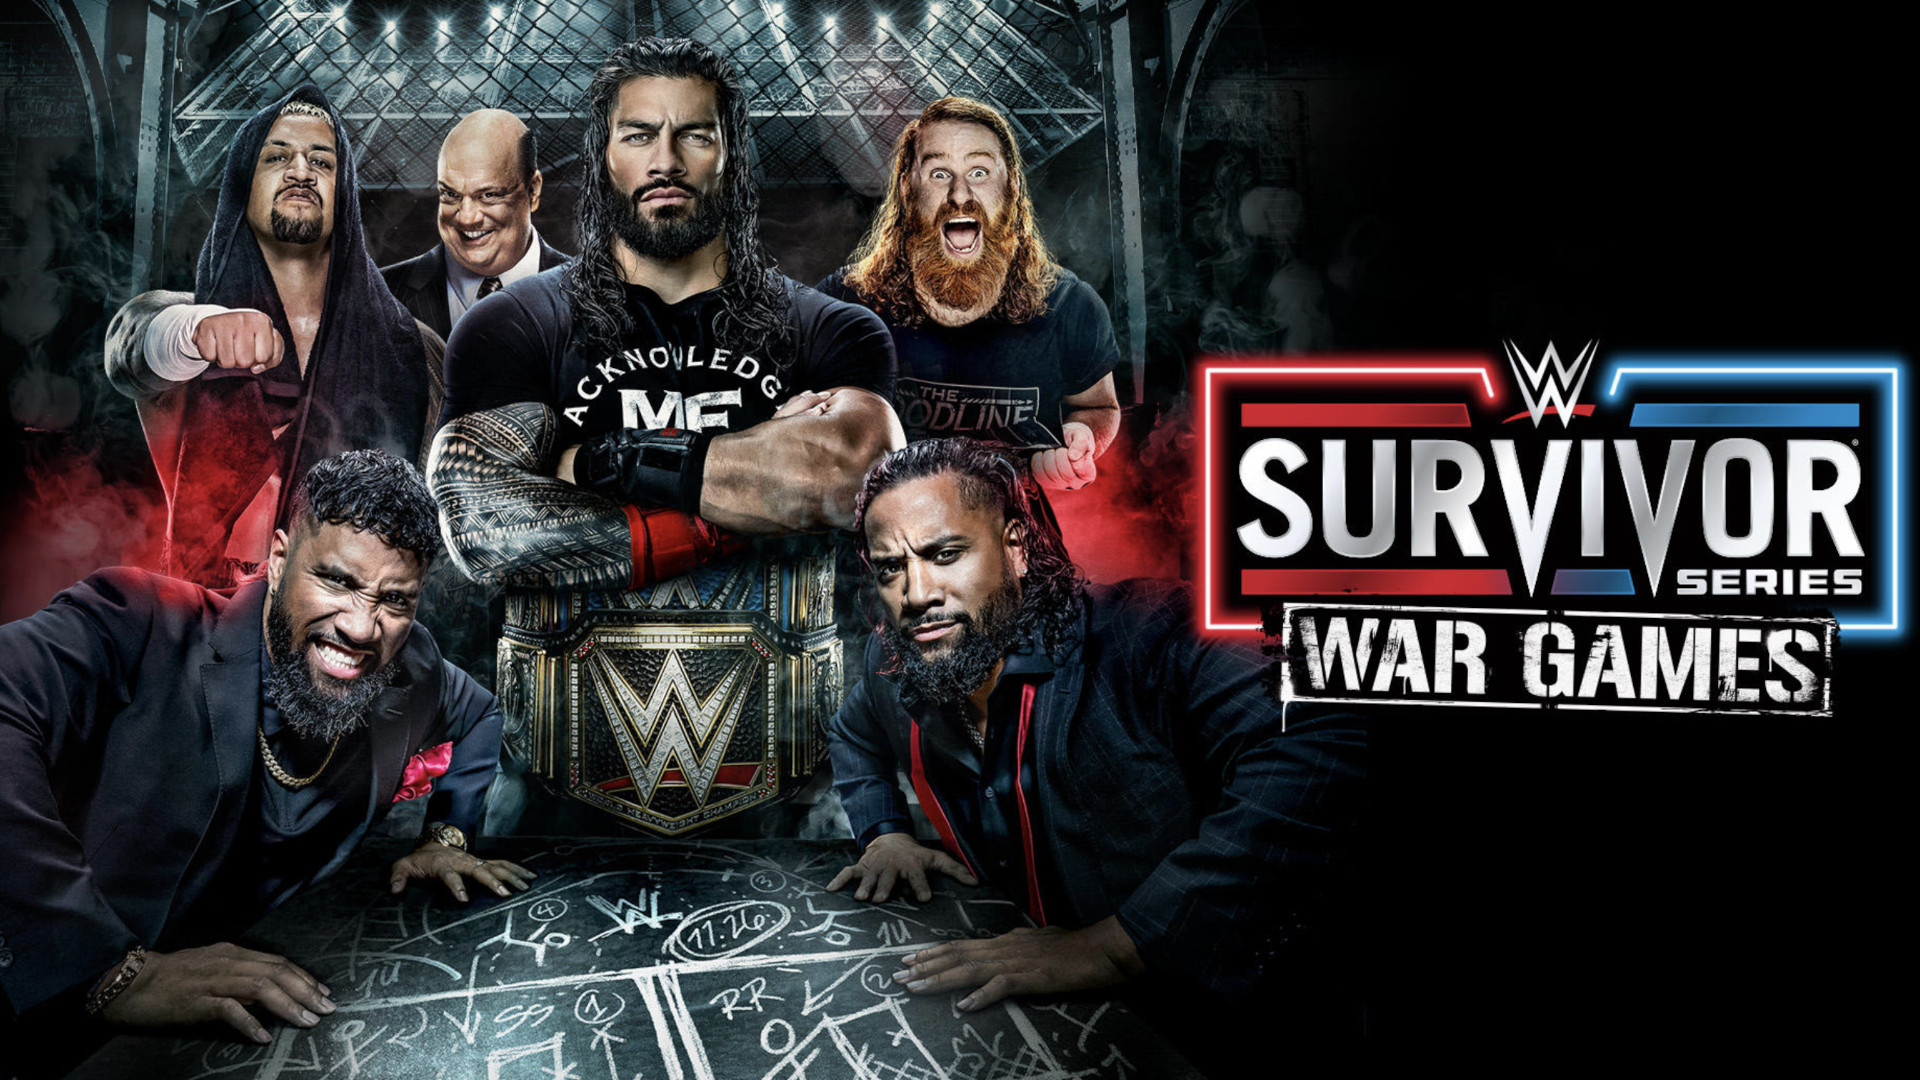 How to watch WWE Survivor Series WarGames live stream The Bloodline vs